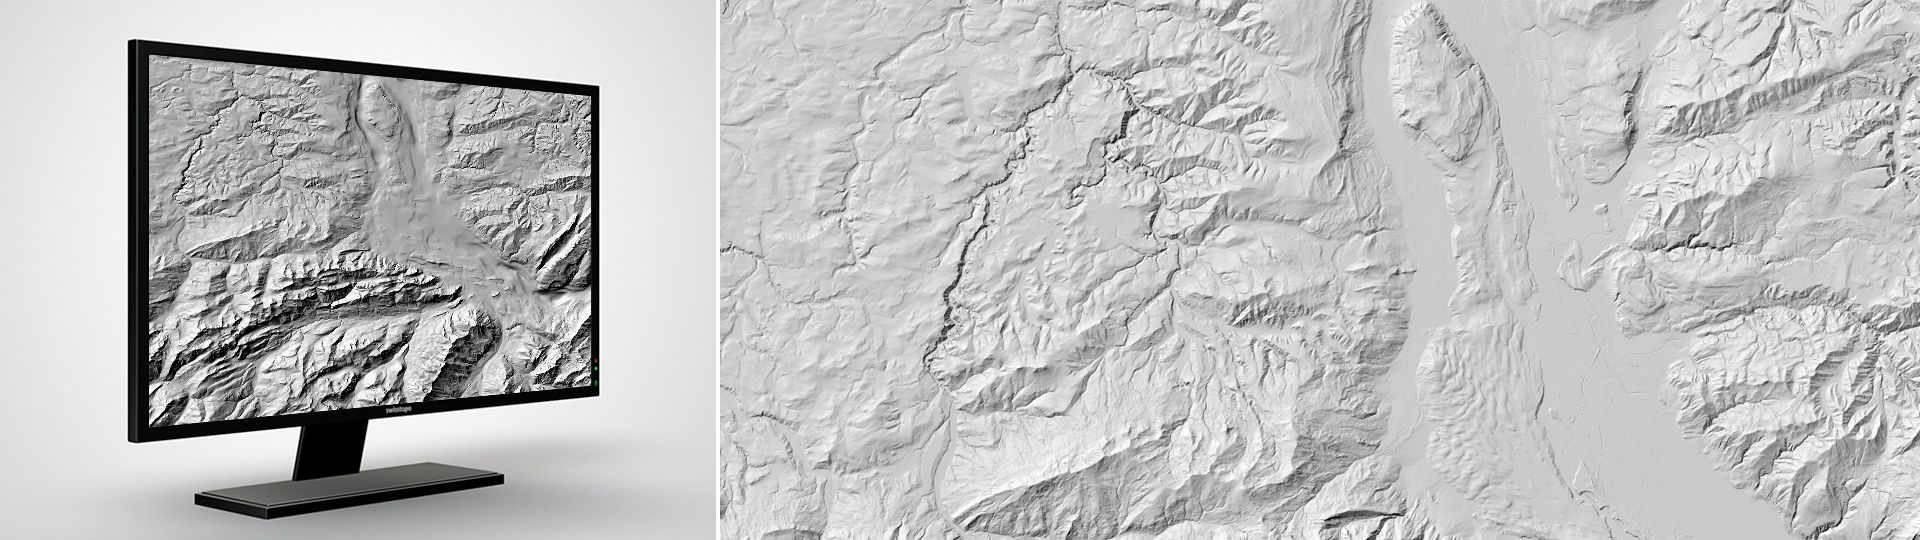 Bedrock elevation model: the digital bedrock elevation model in the Molasse Basin and the larger Alpine valleys